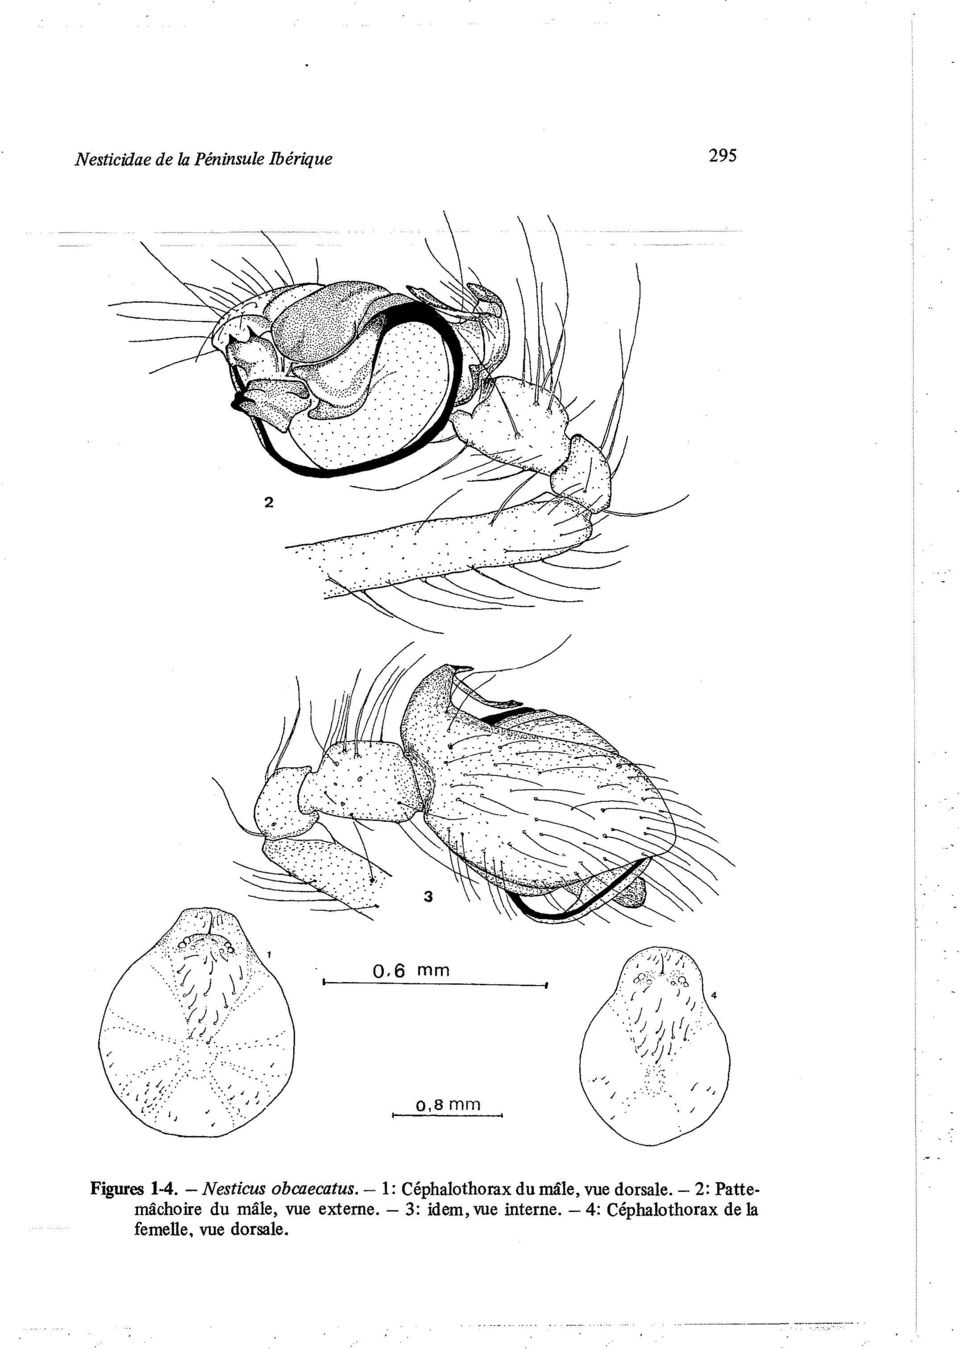 - 1: Céphalothorax du mâle, vue dorsale.